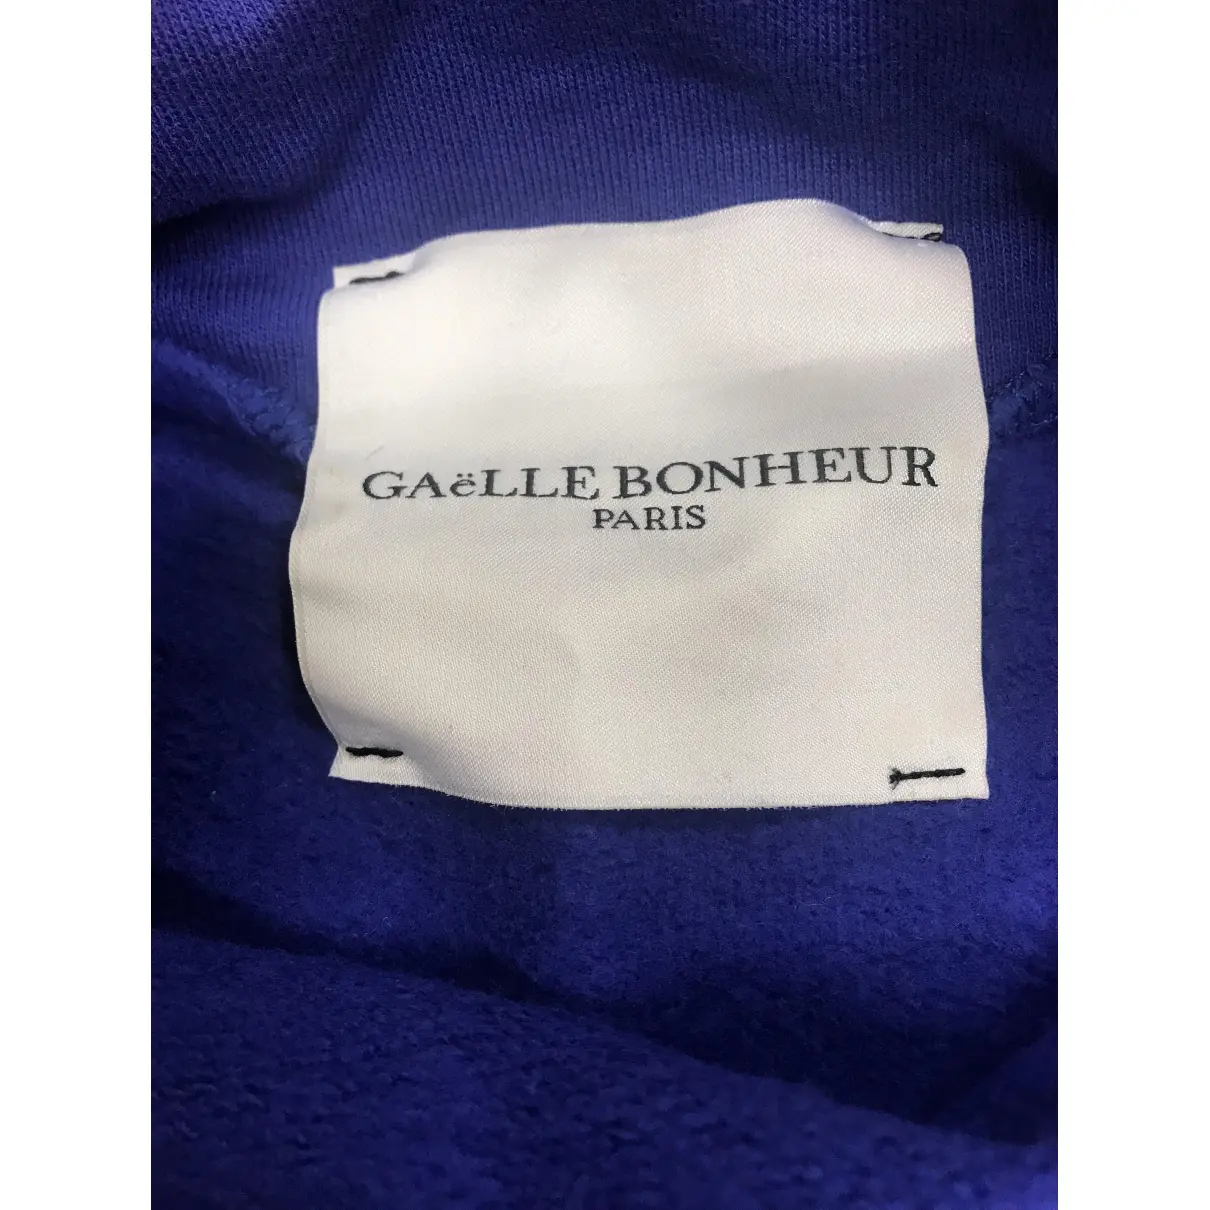 Buy Gaelle Bonheur Blue Cotton Knitwear online